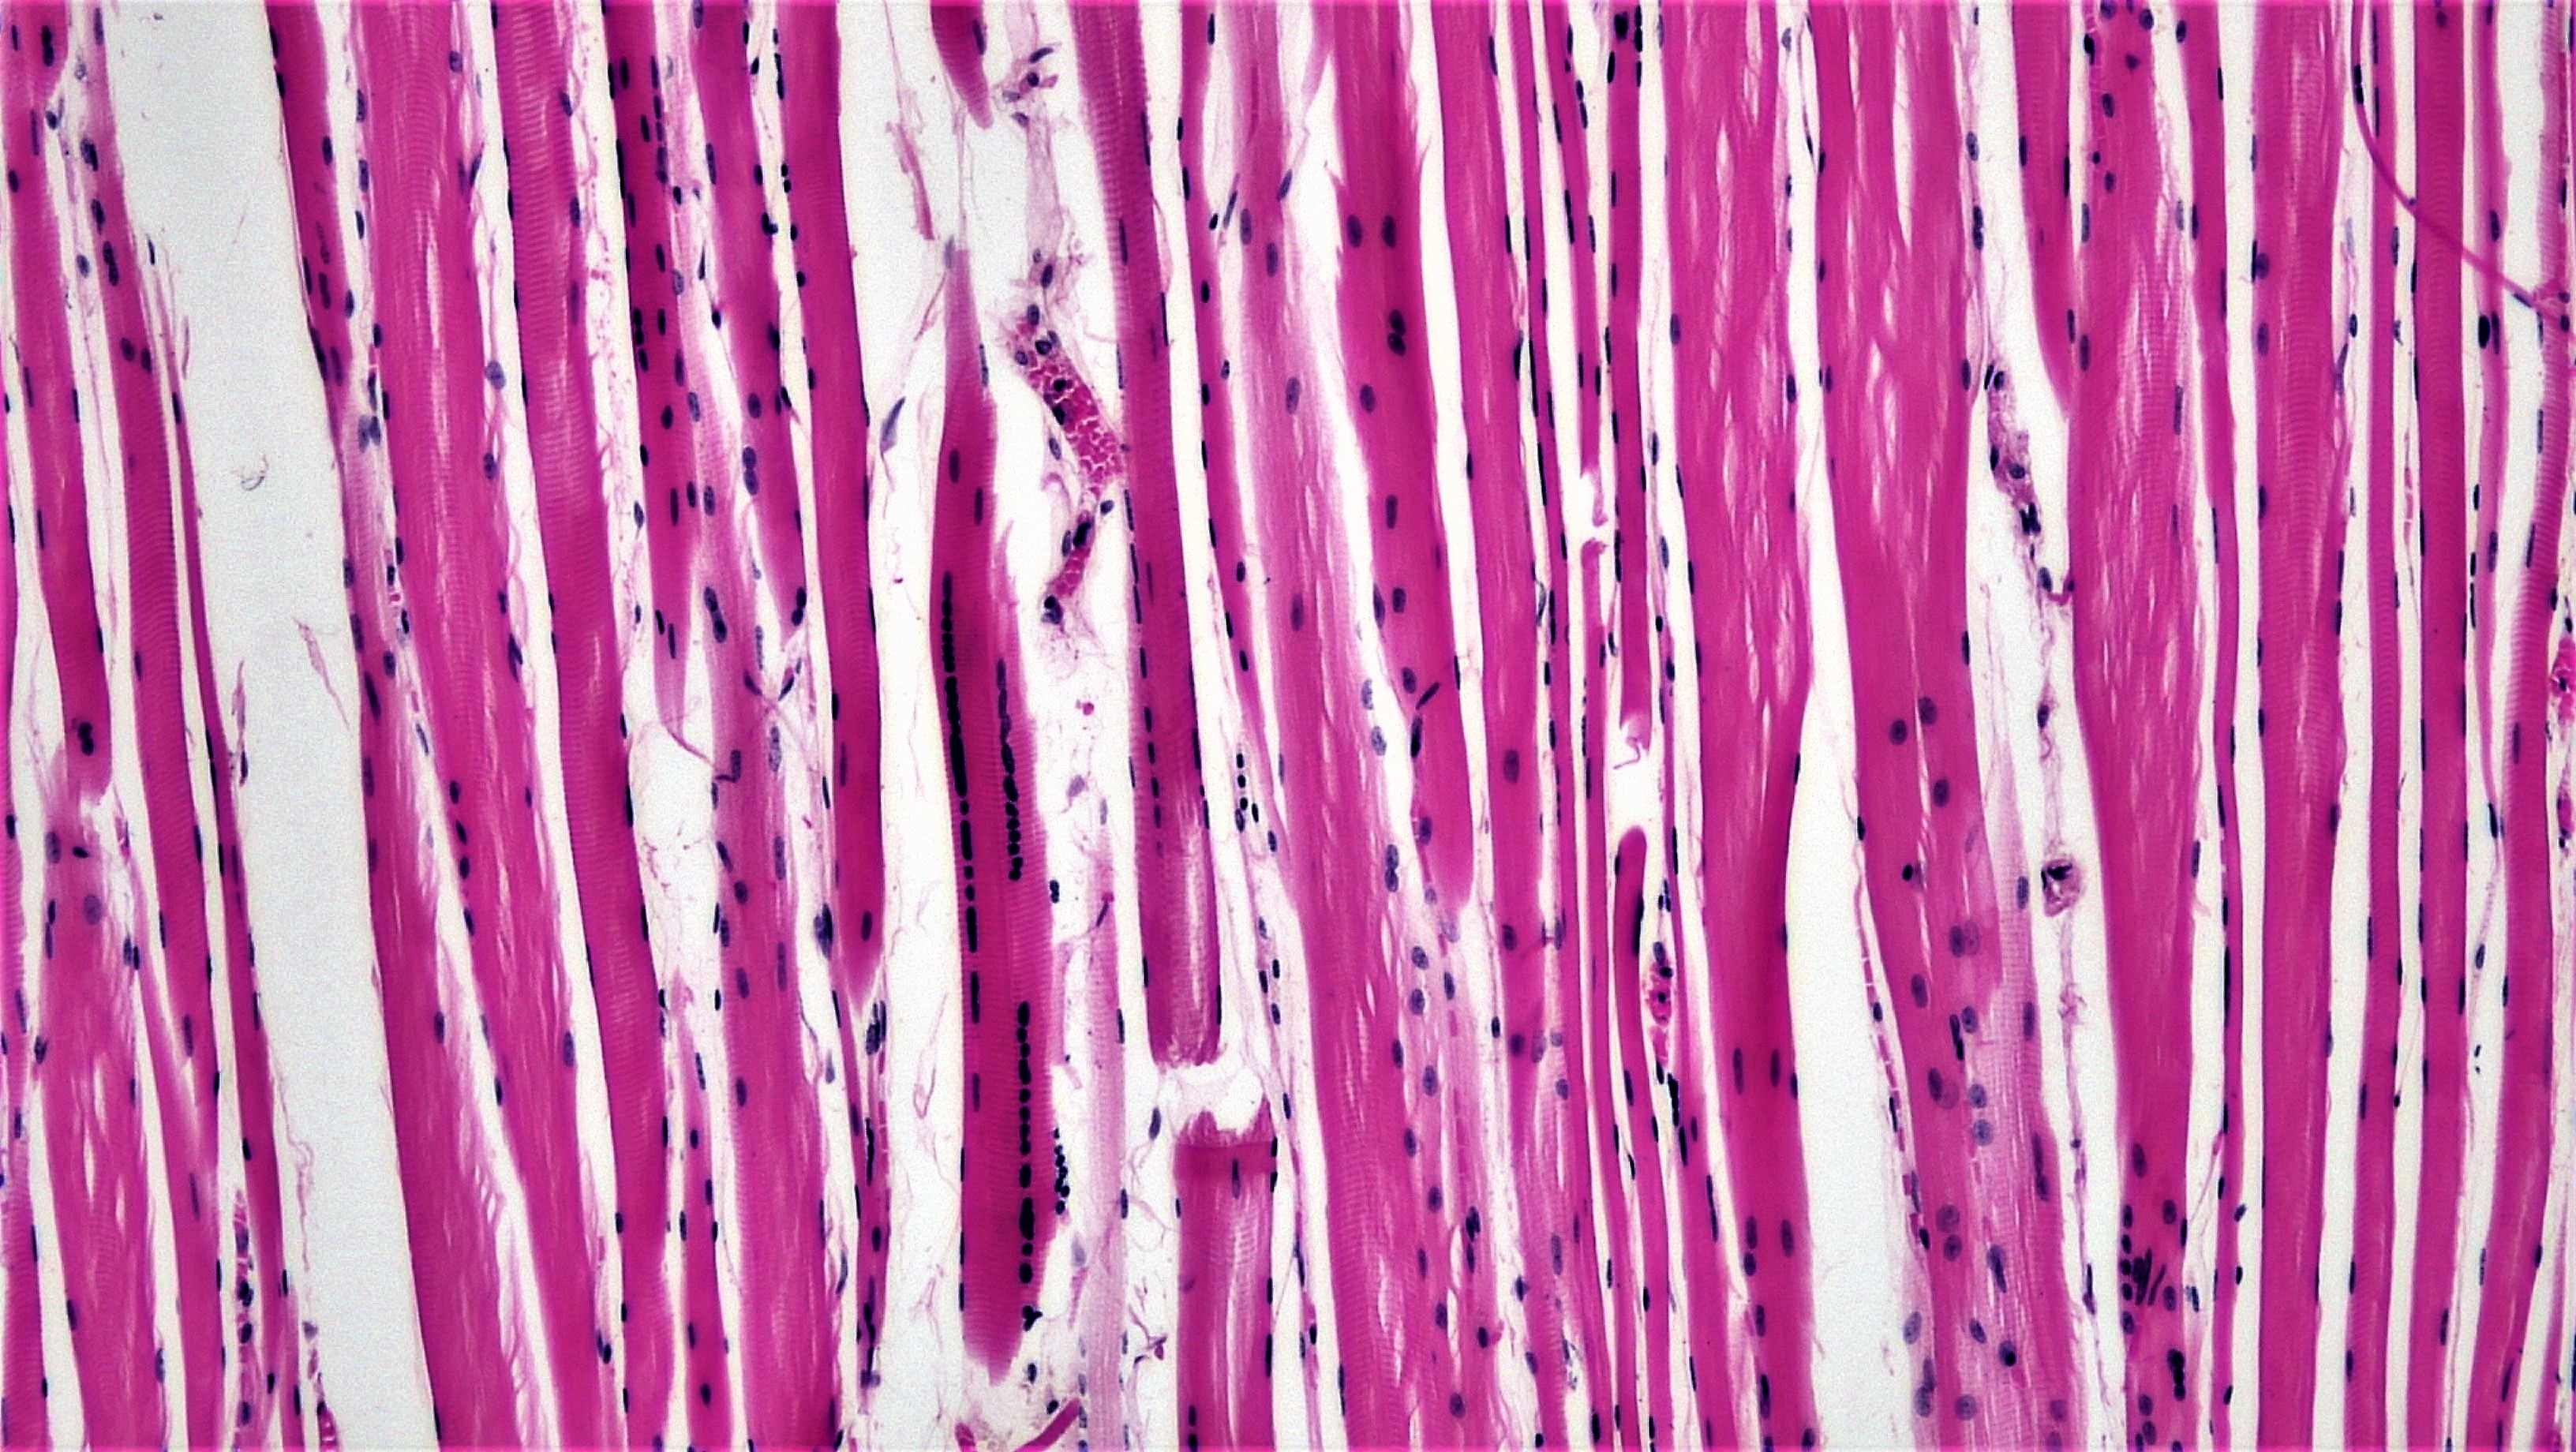 Клетка сердечной поперечно полосатой мышечной ткани